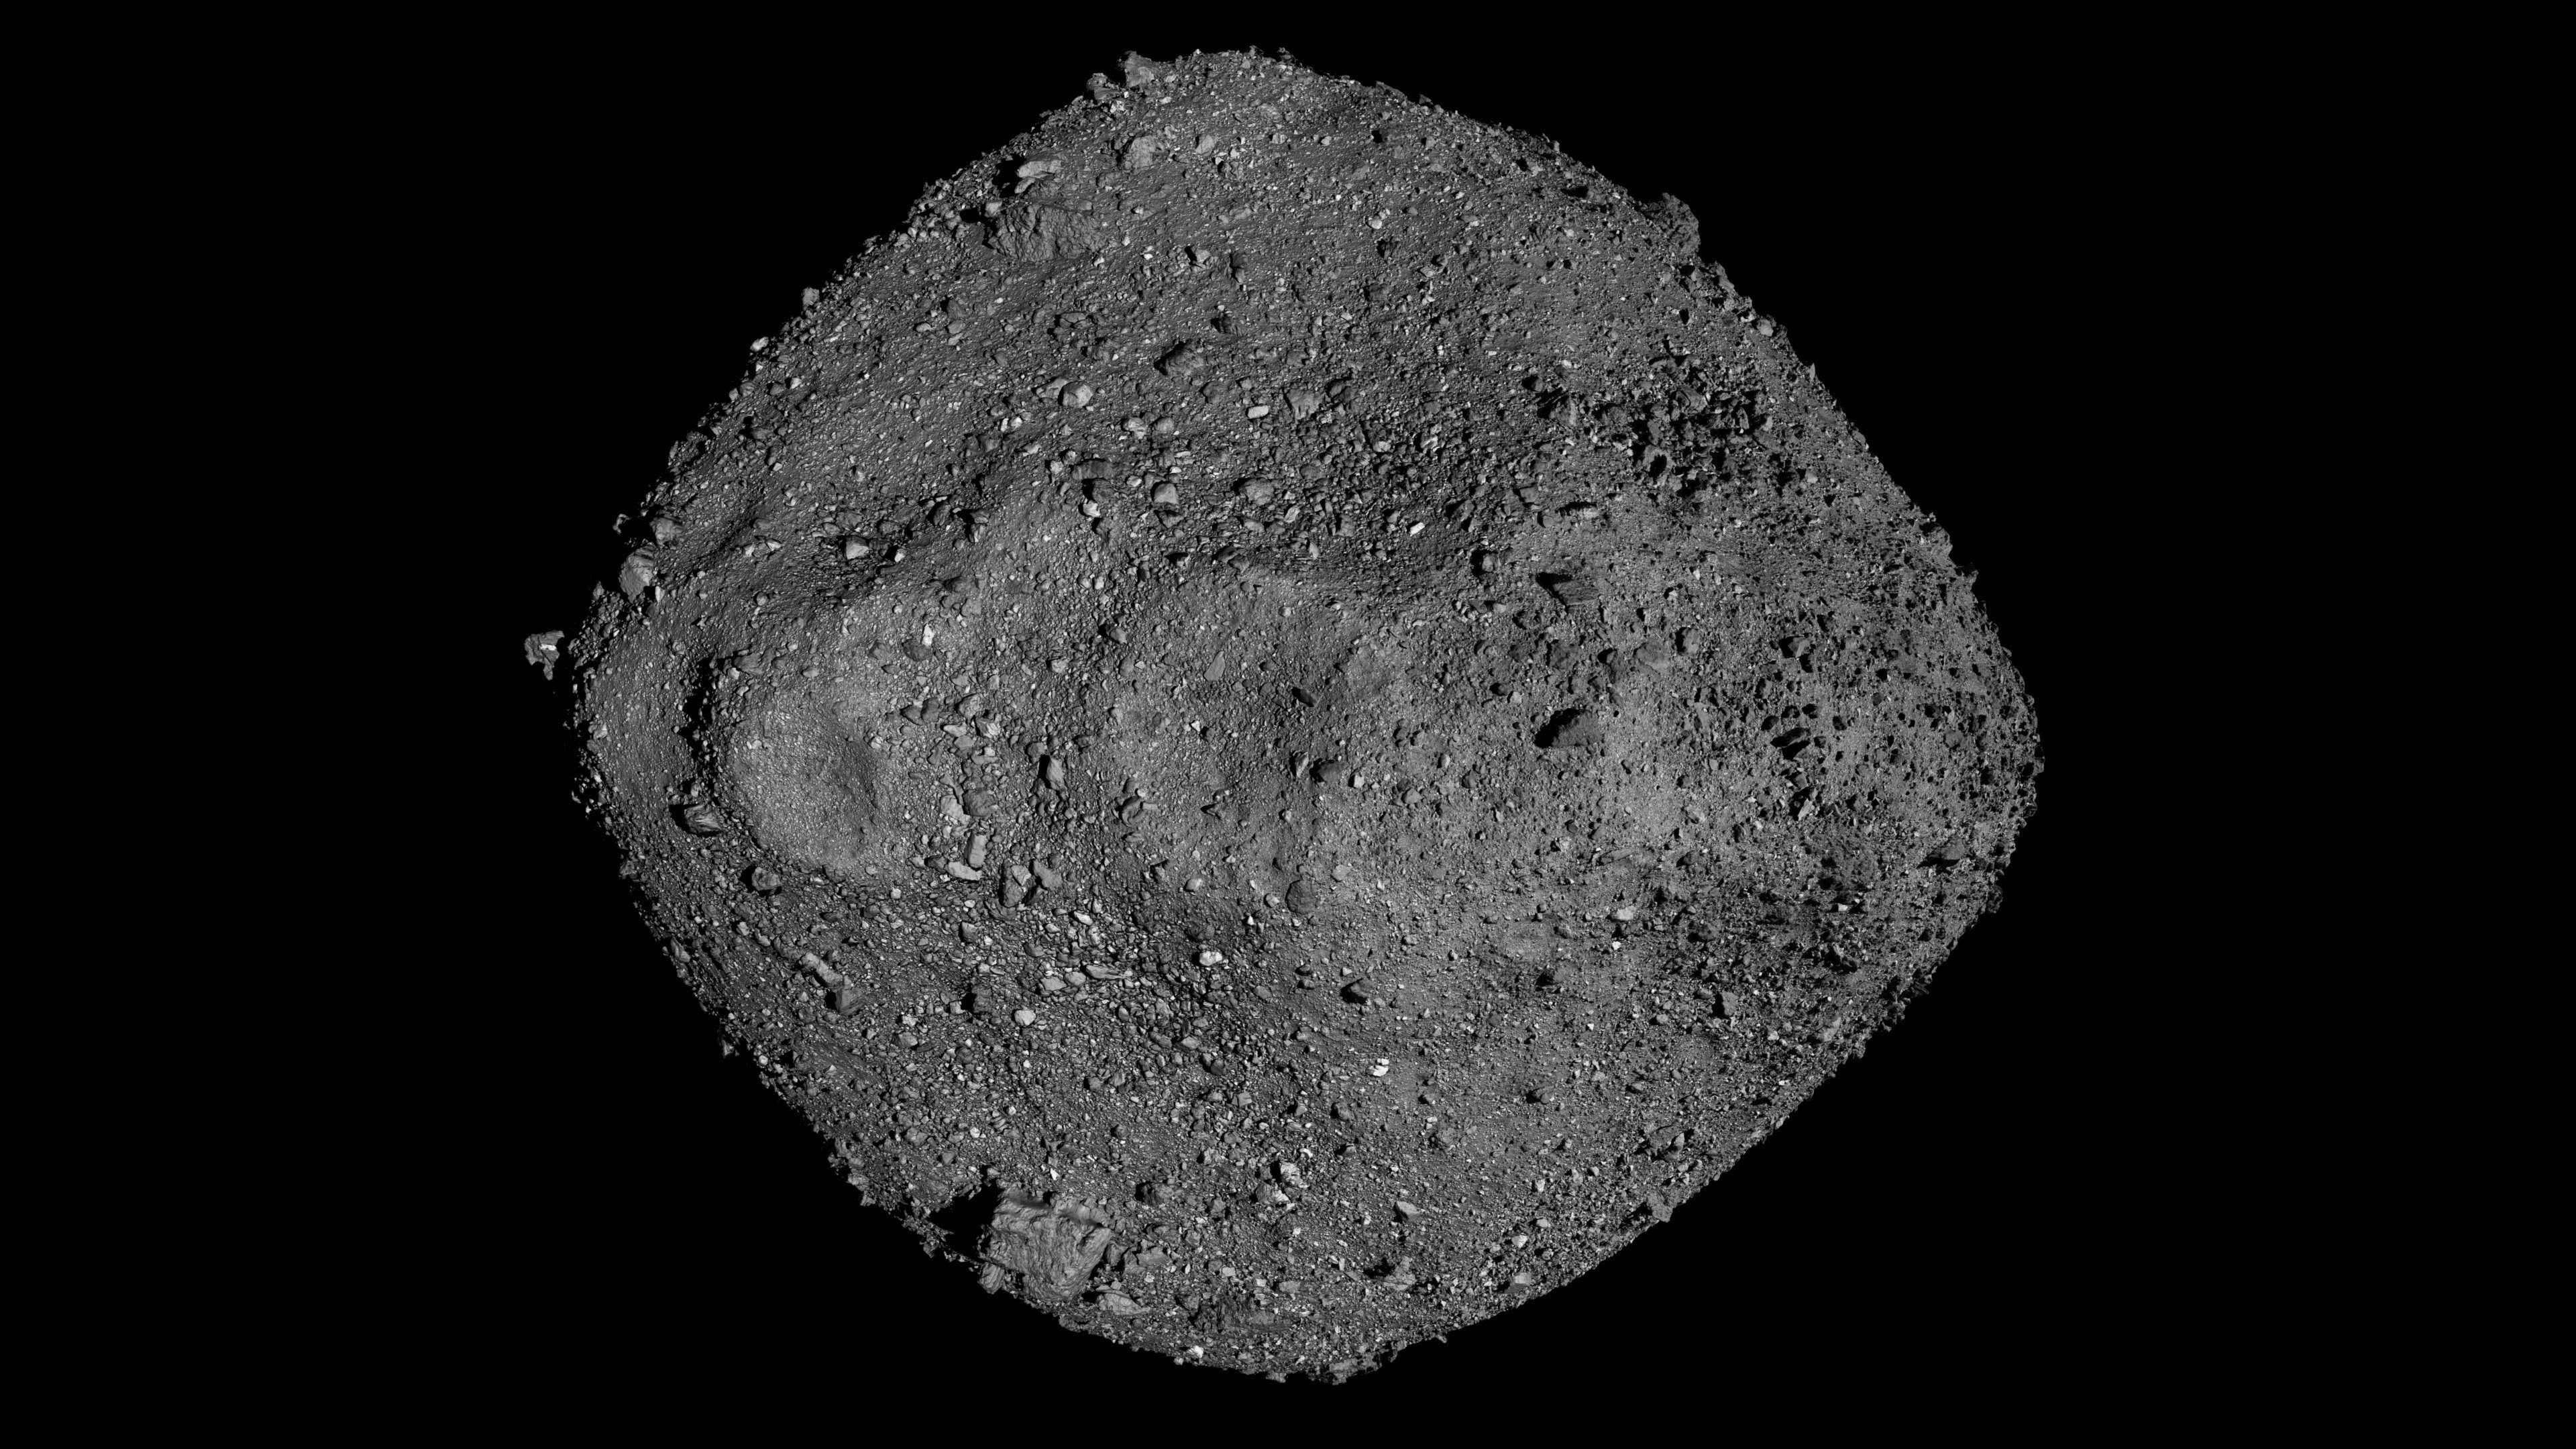 Asteroid Bennu nearly ate NASA's sampling spacecraft thumbnail